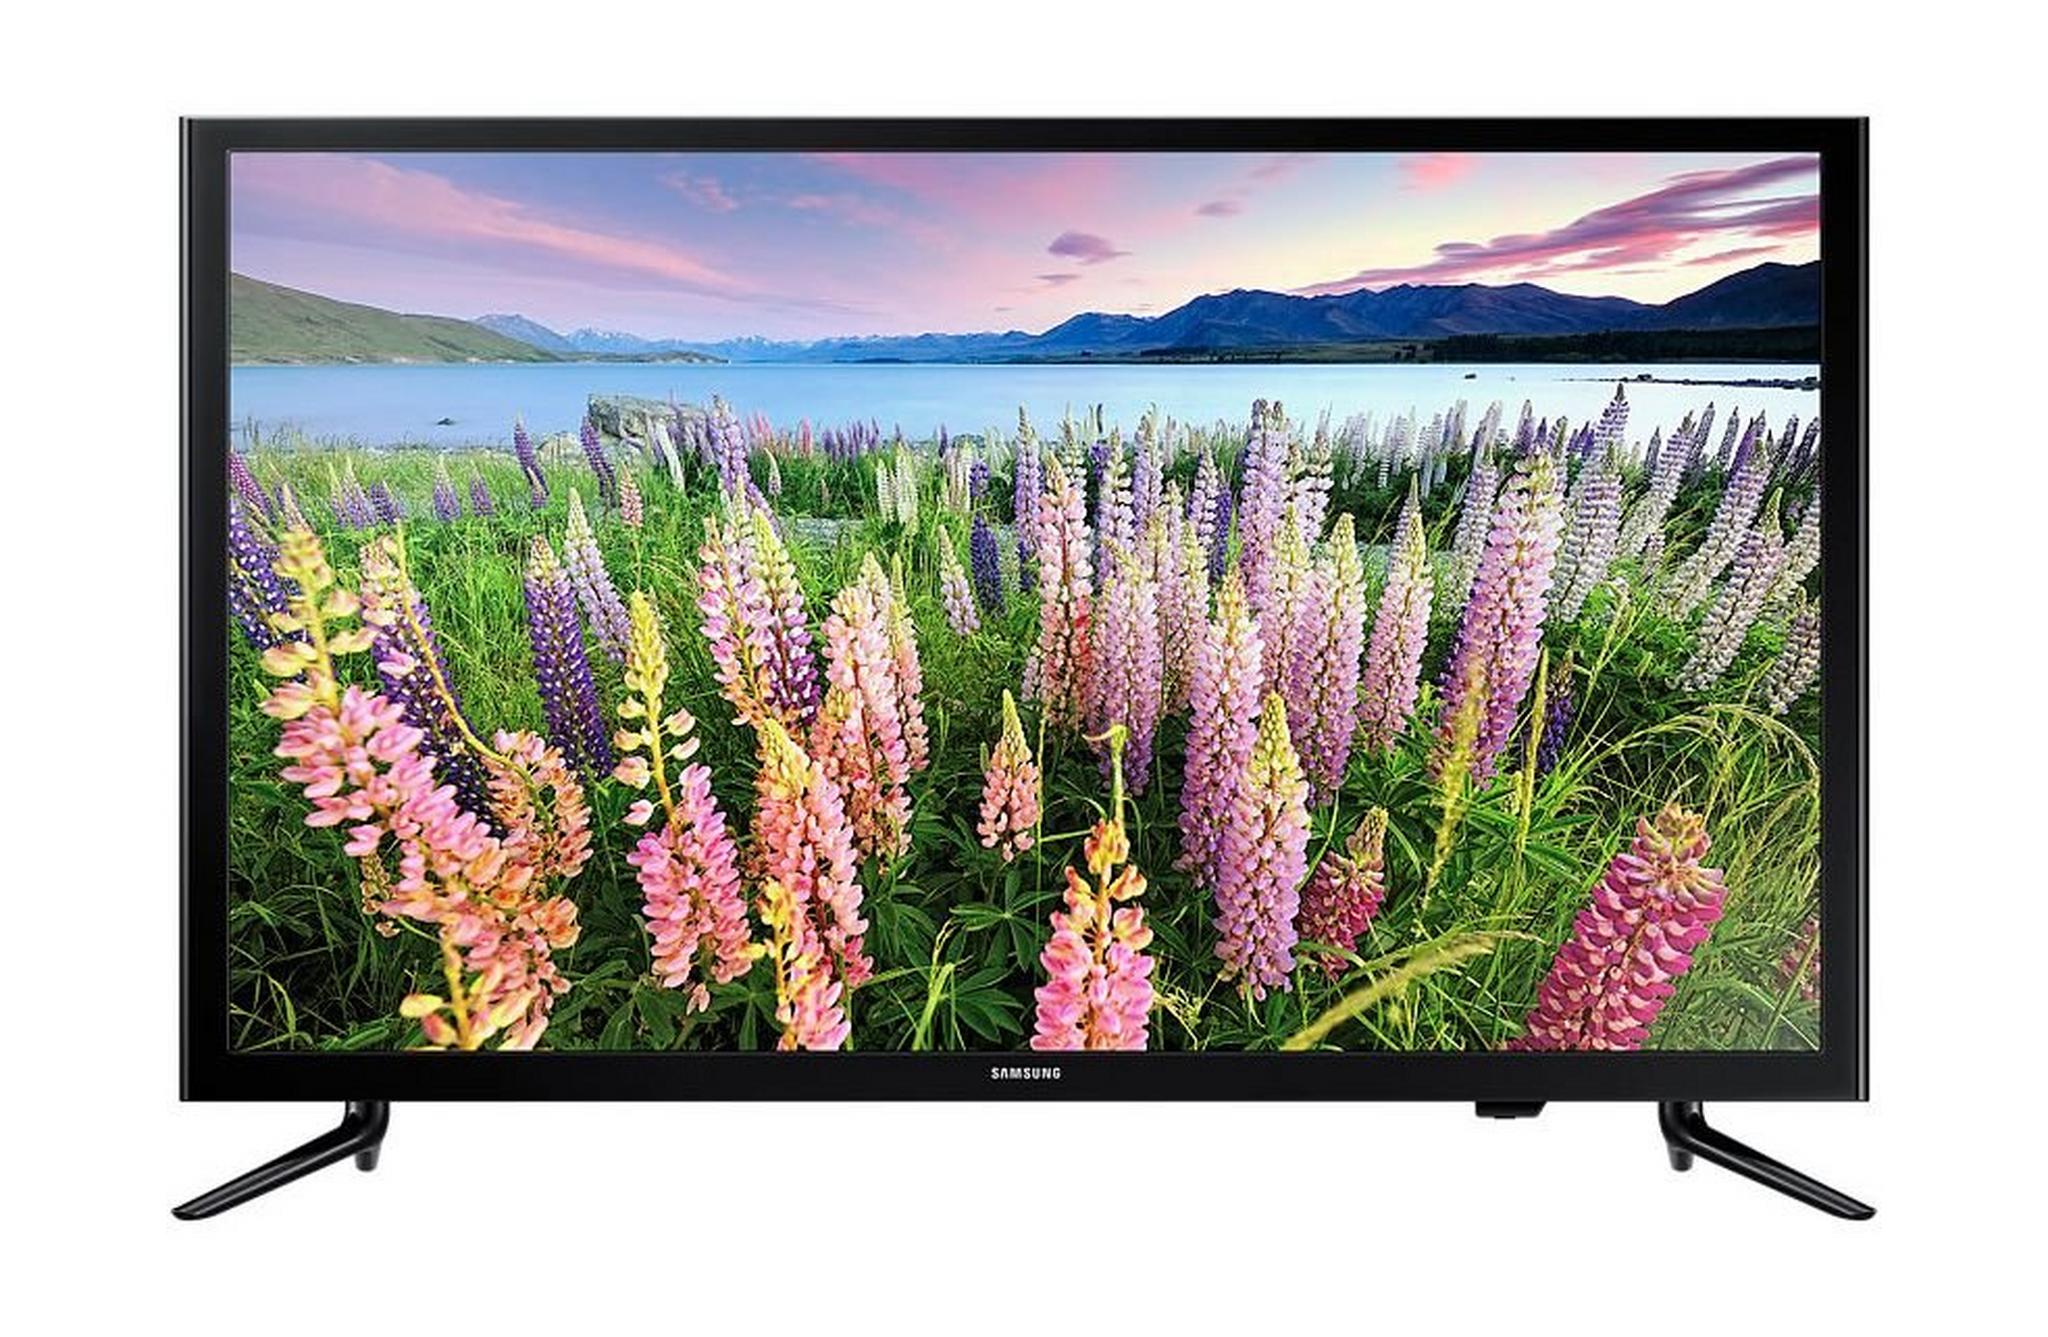 Samsung 48-inch Full HD (1080p) Smart LED TV - UA48J5200A